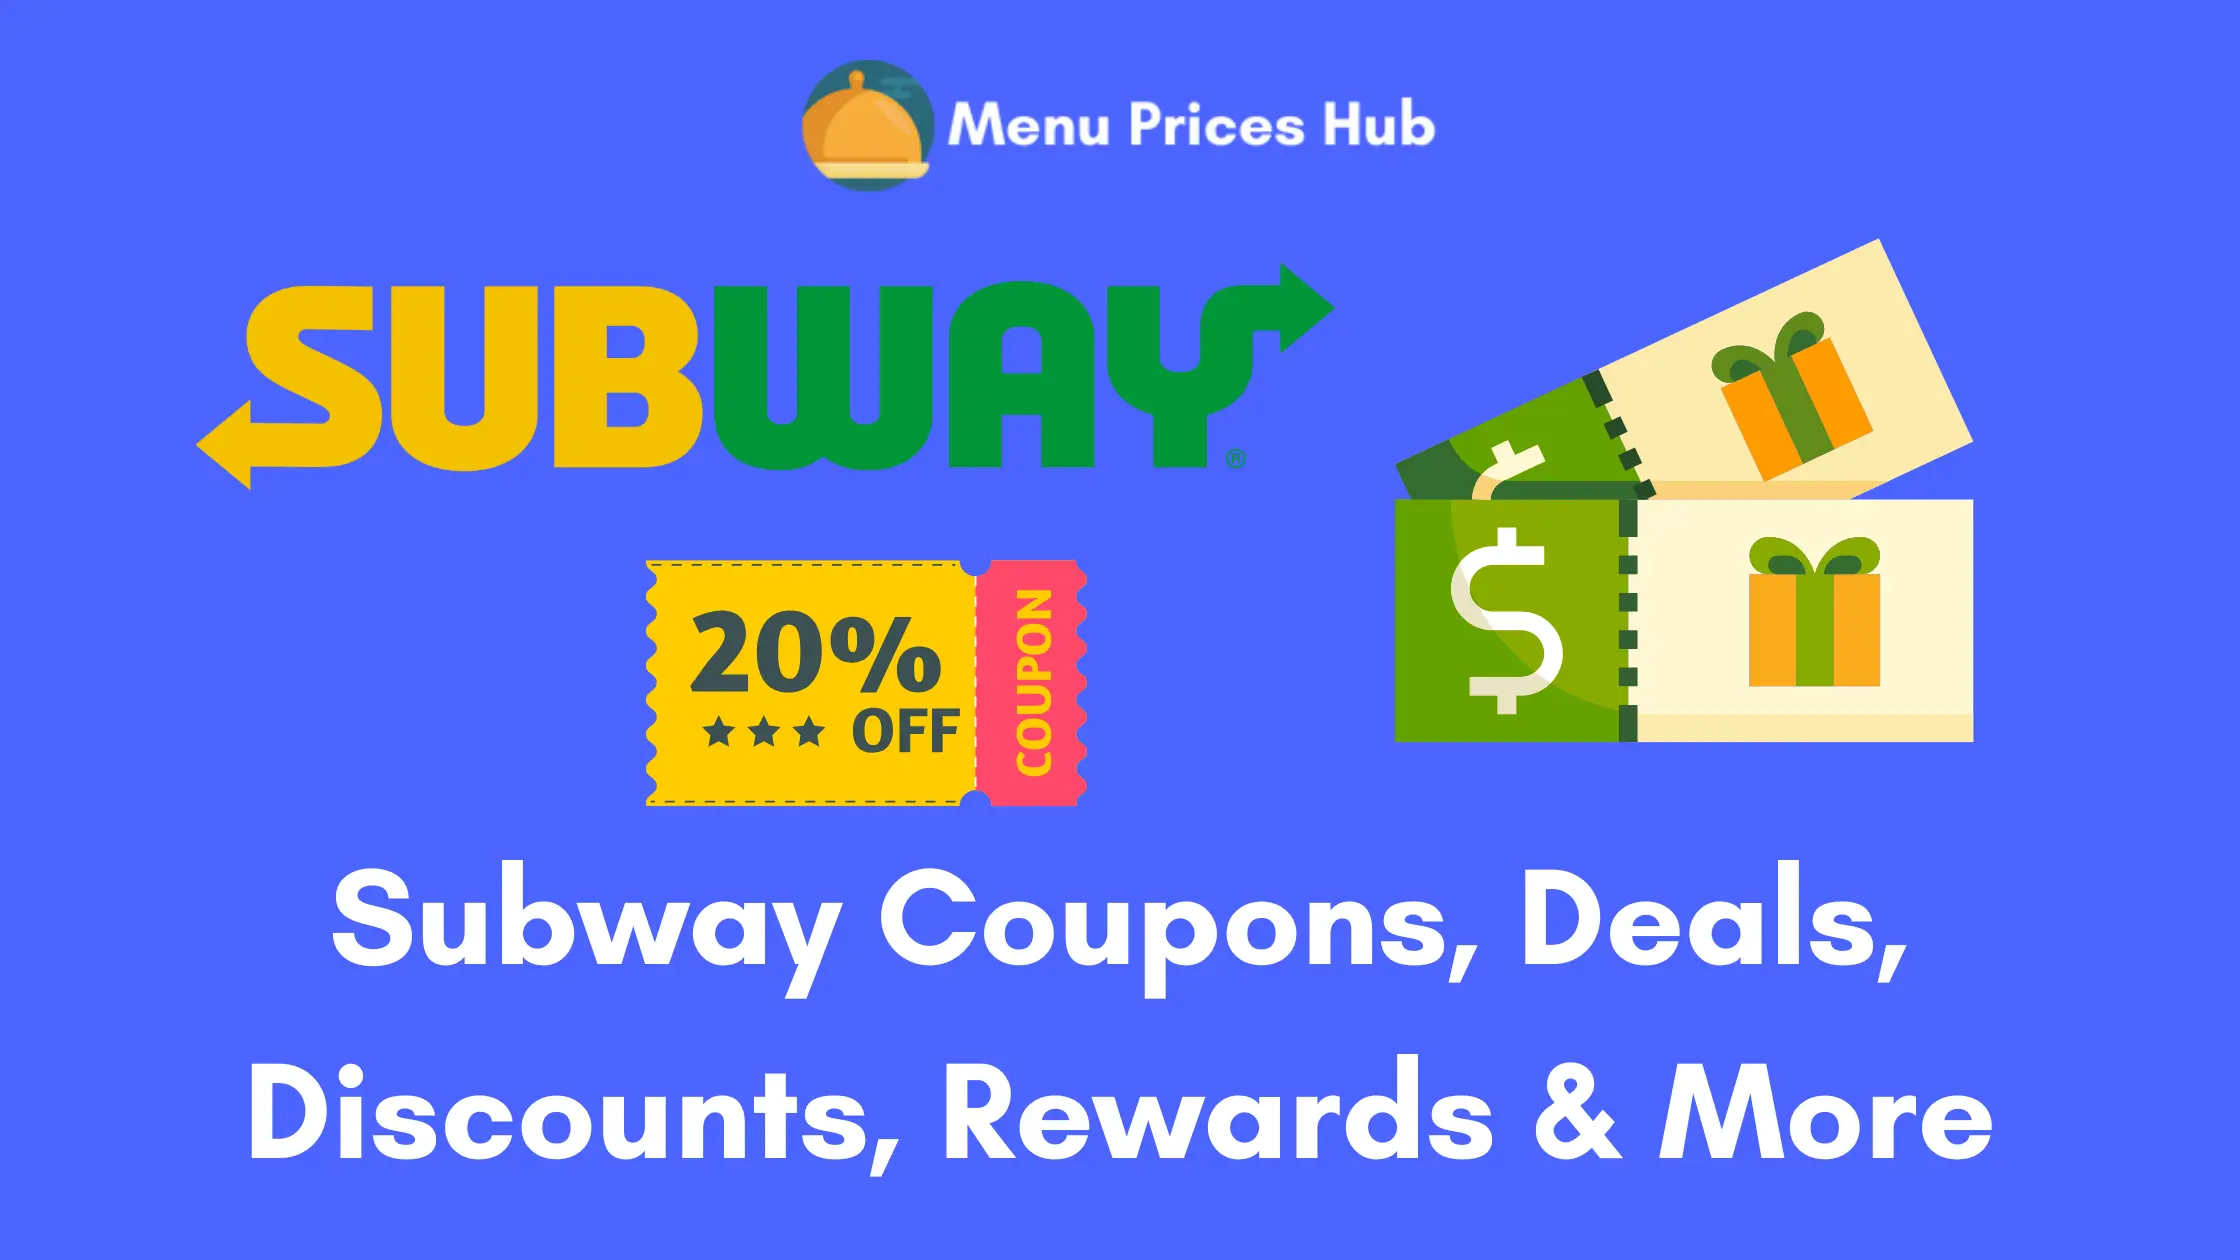 Subway Coupons, Deals, Discounts, Rewards & More